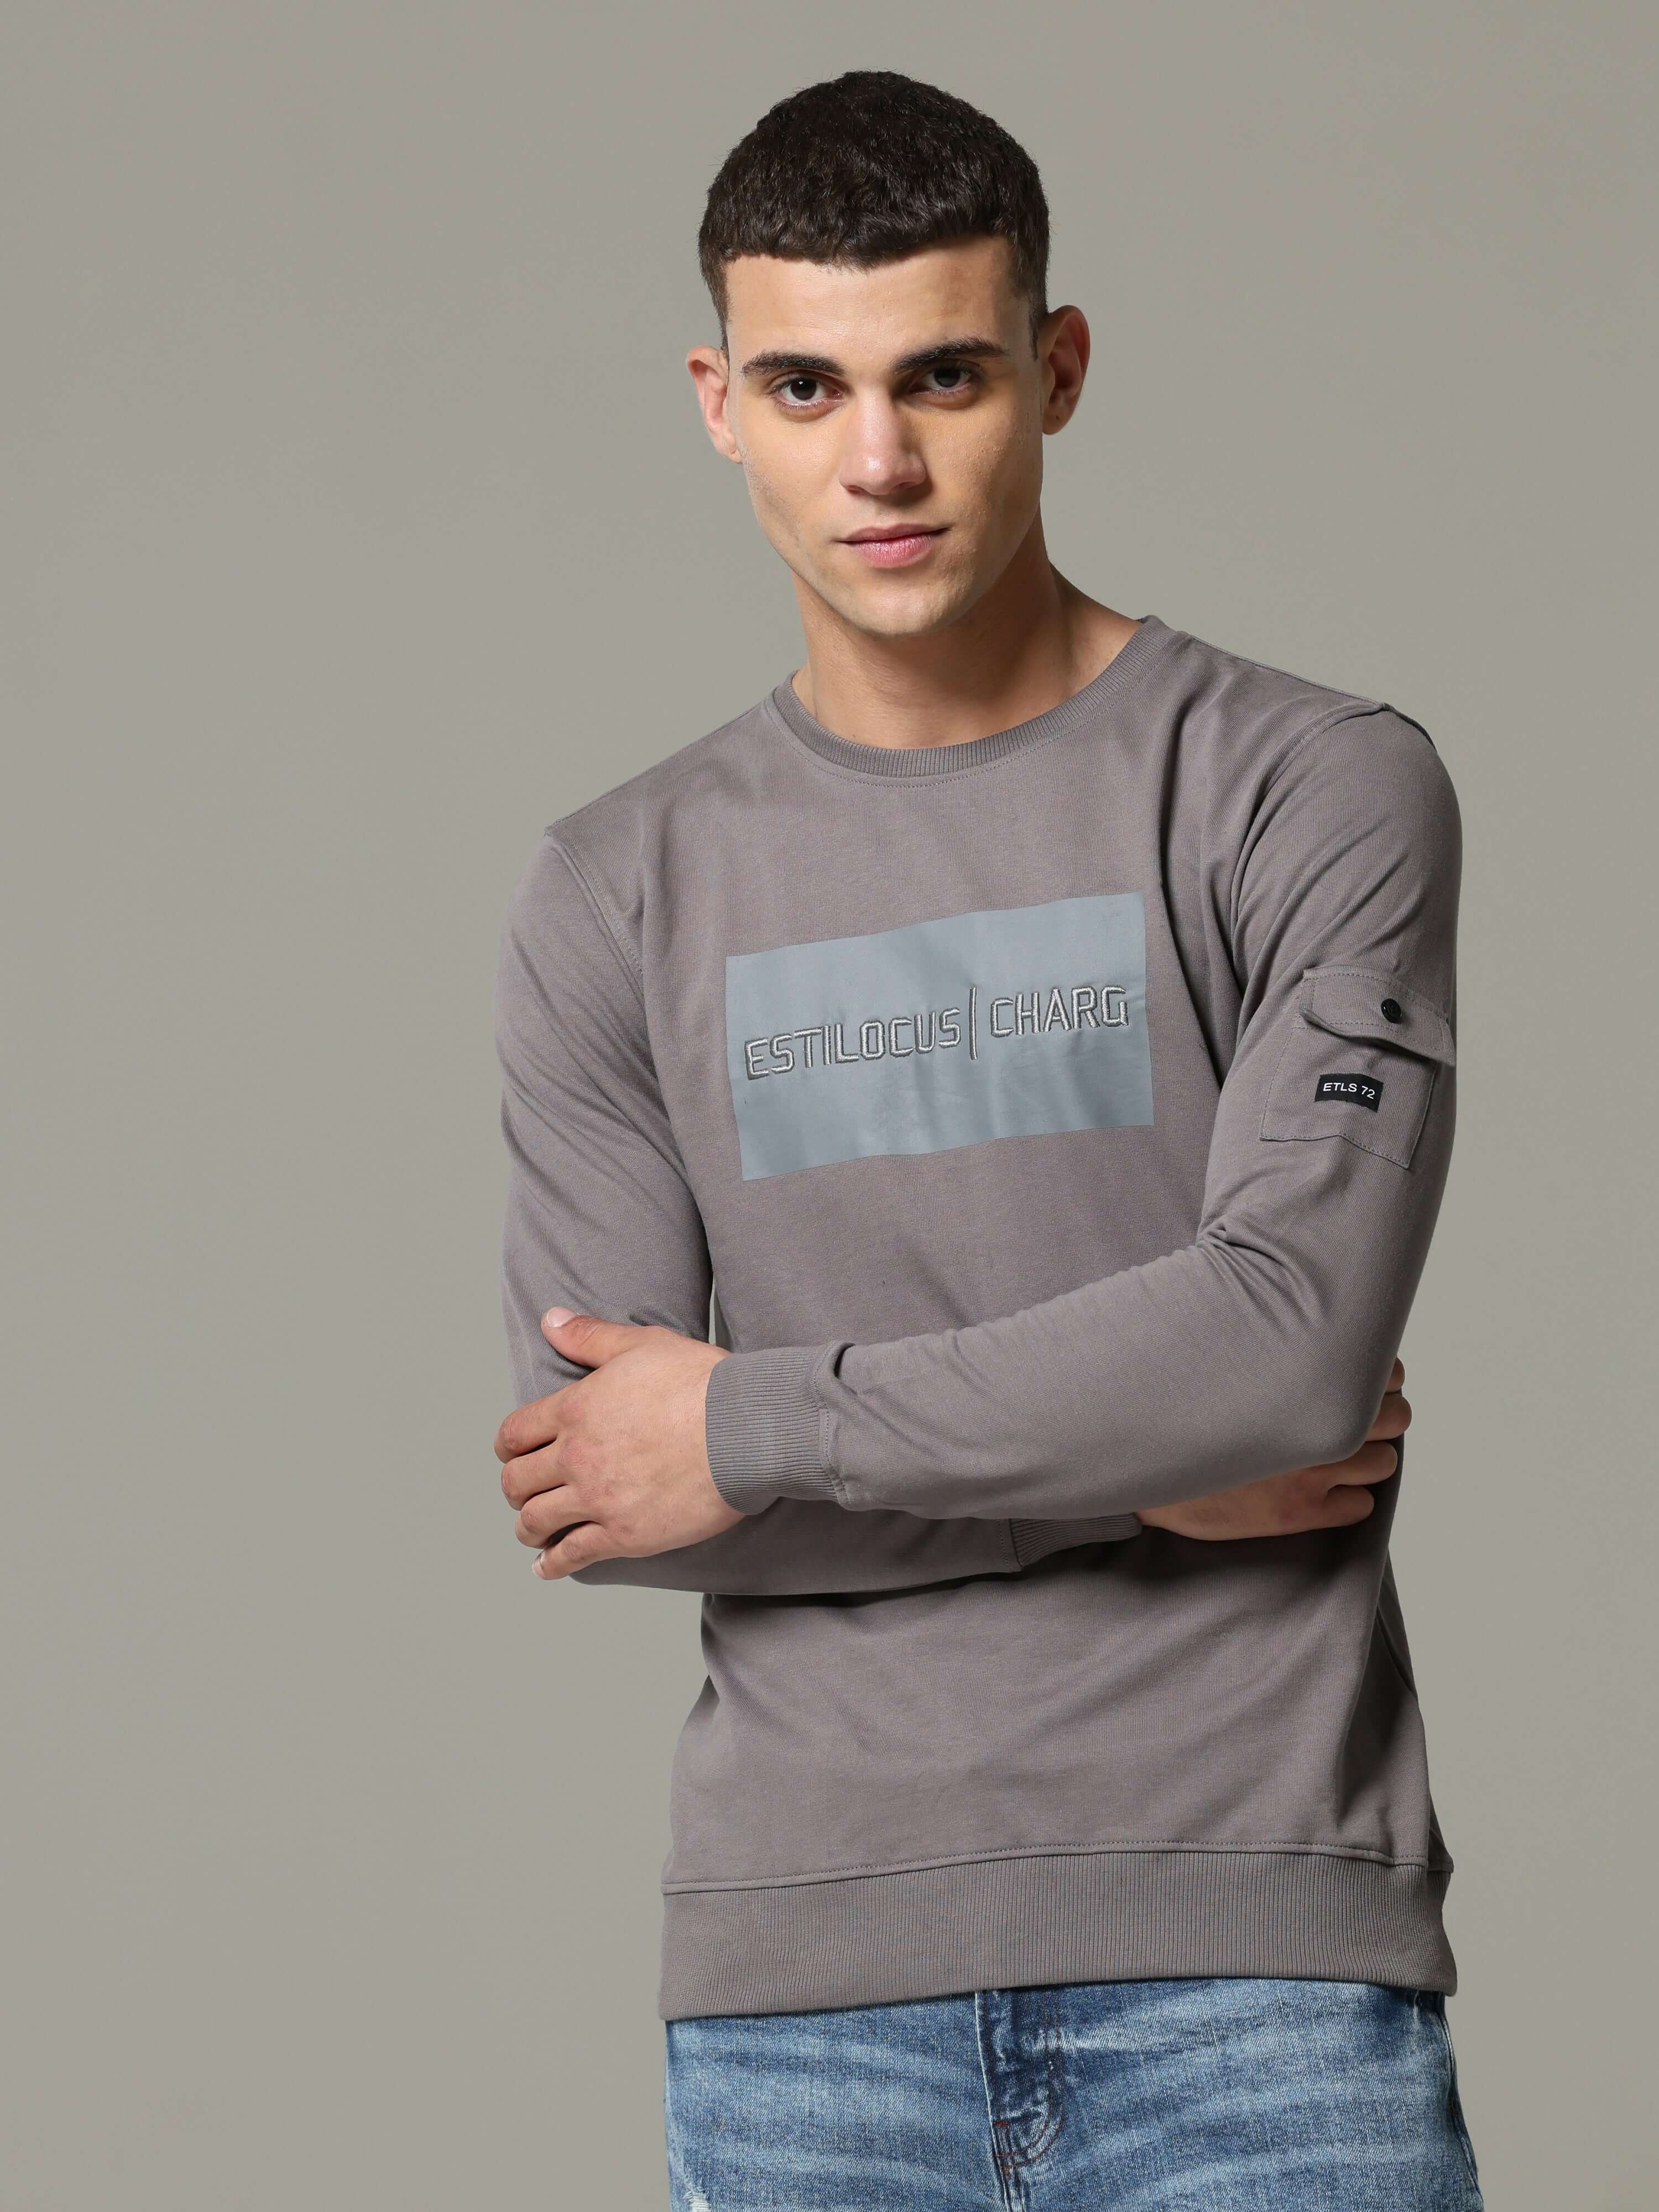 Charg Cargo Steel Grey Sweat Shirt_ SweatShirt_ estilocus